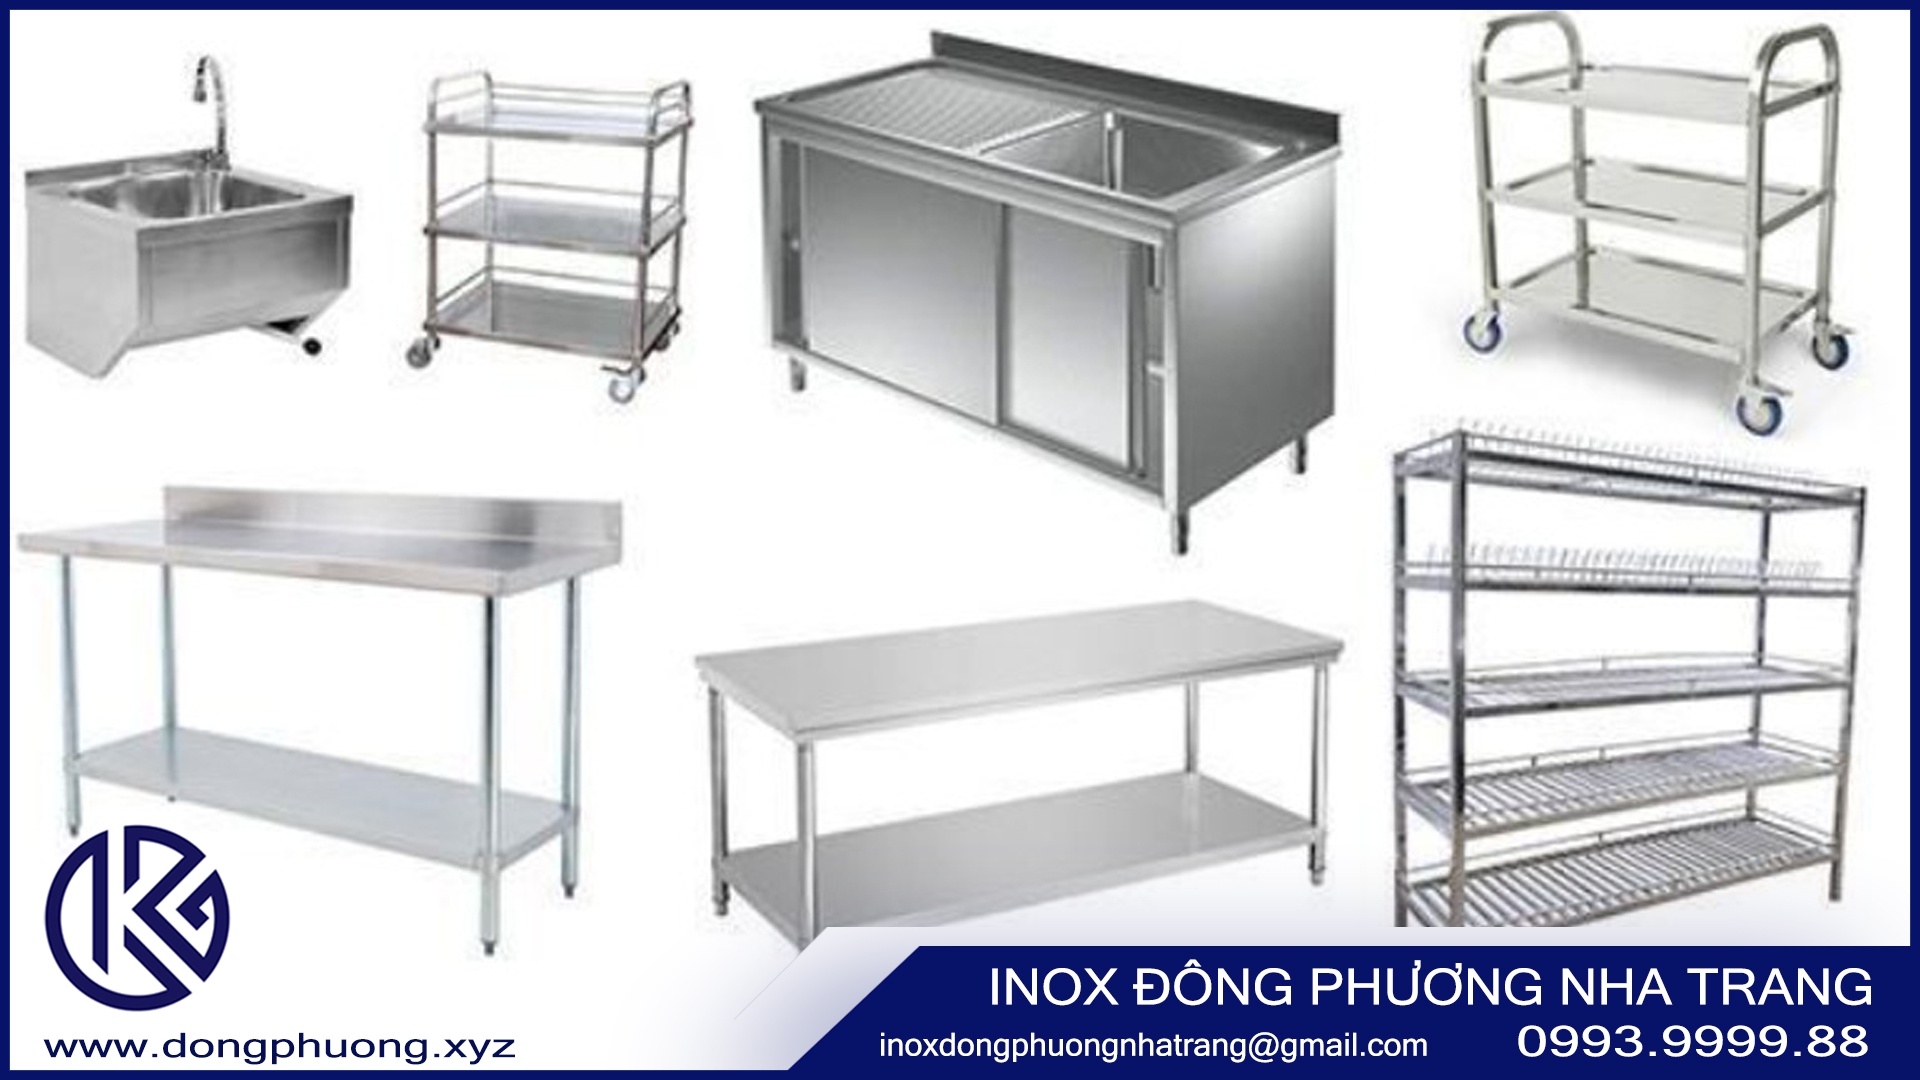 Inox trắng gương - vật liệu cao cấp được ứng dụng nhiều trong công nghiệp2